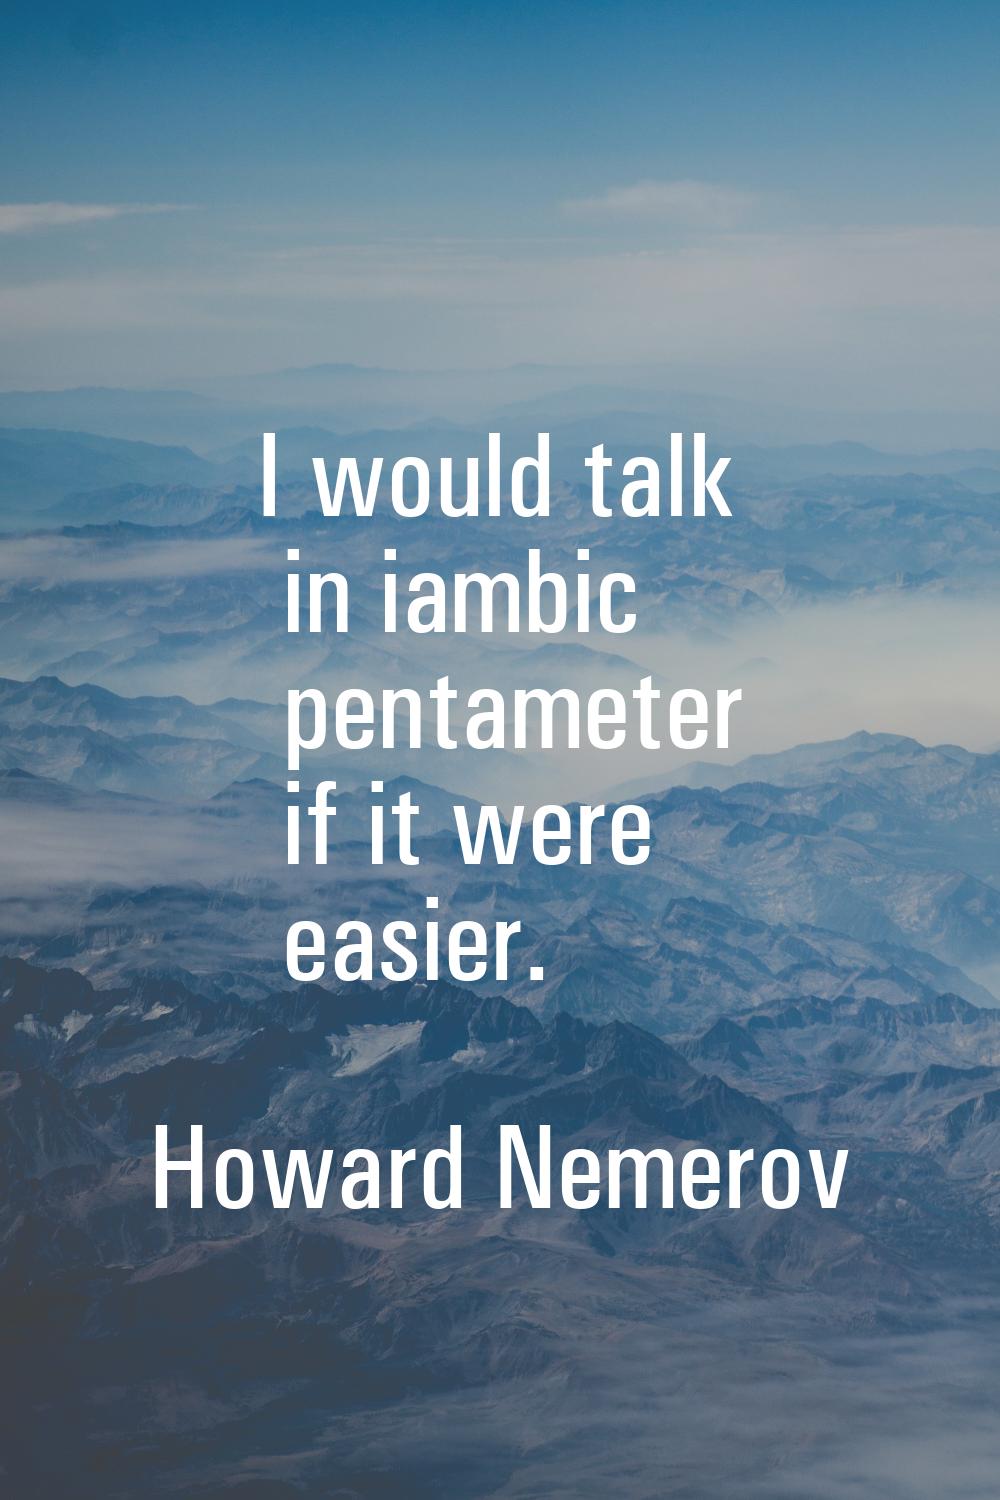 I would talk in iambic pentameter if it were easier.